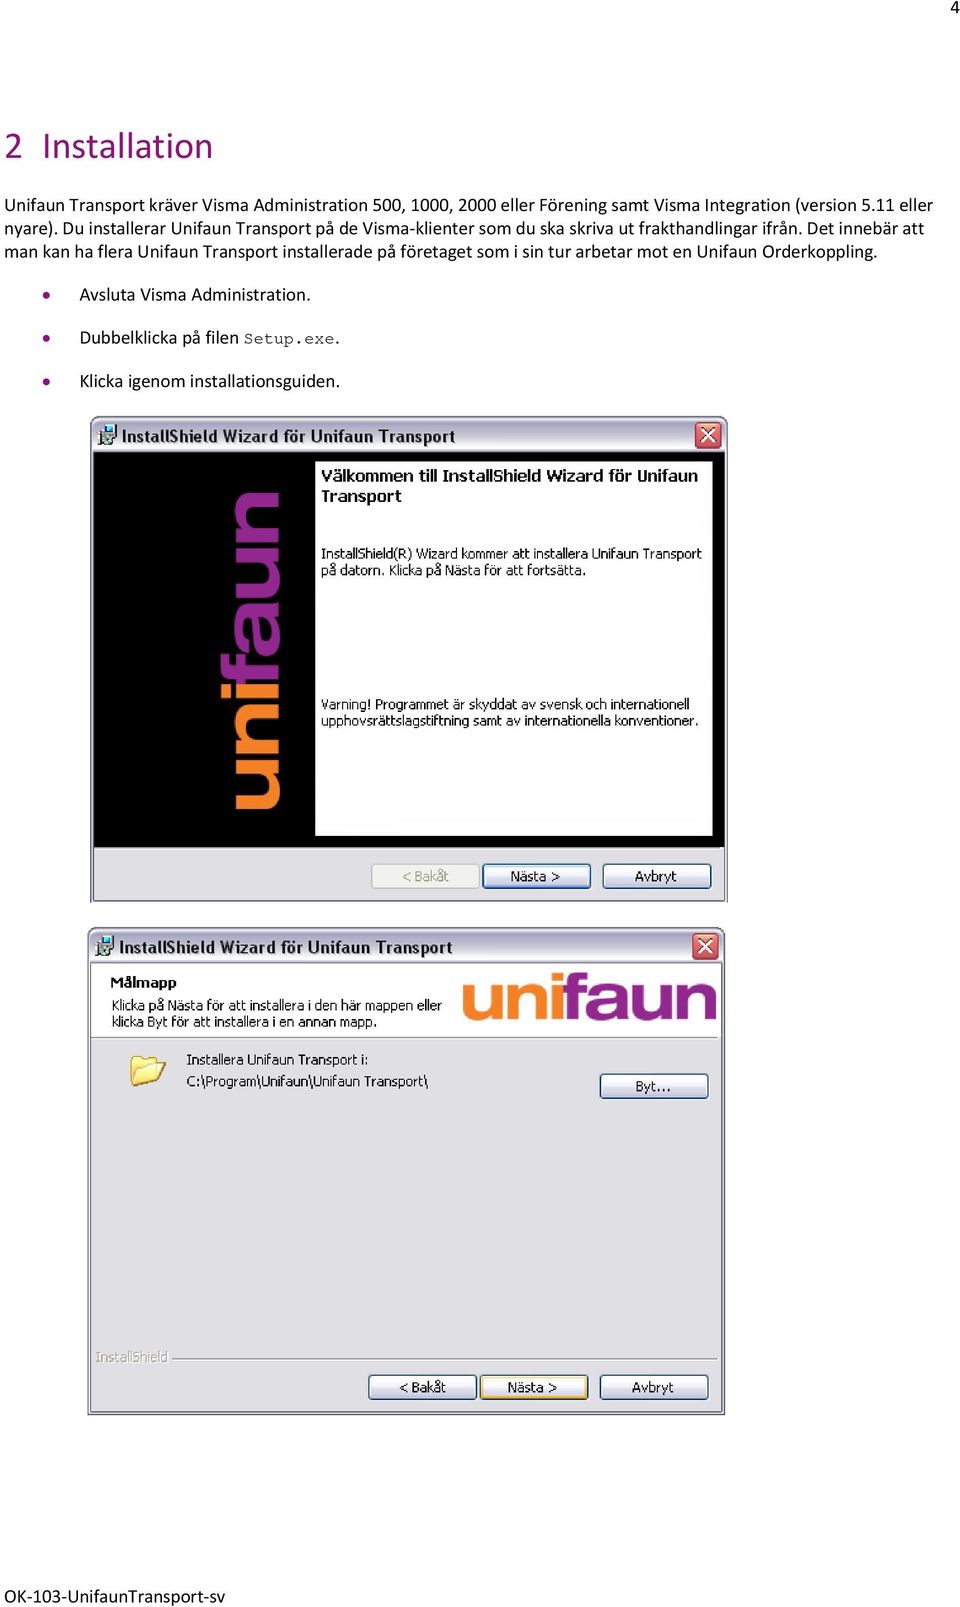 Du installerar Unifaun Transport på de Visma-klienter som du ska skriva ut frakthandlingar ifrån.